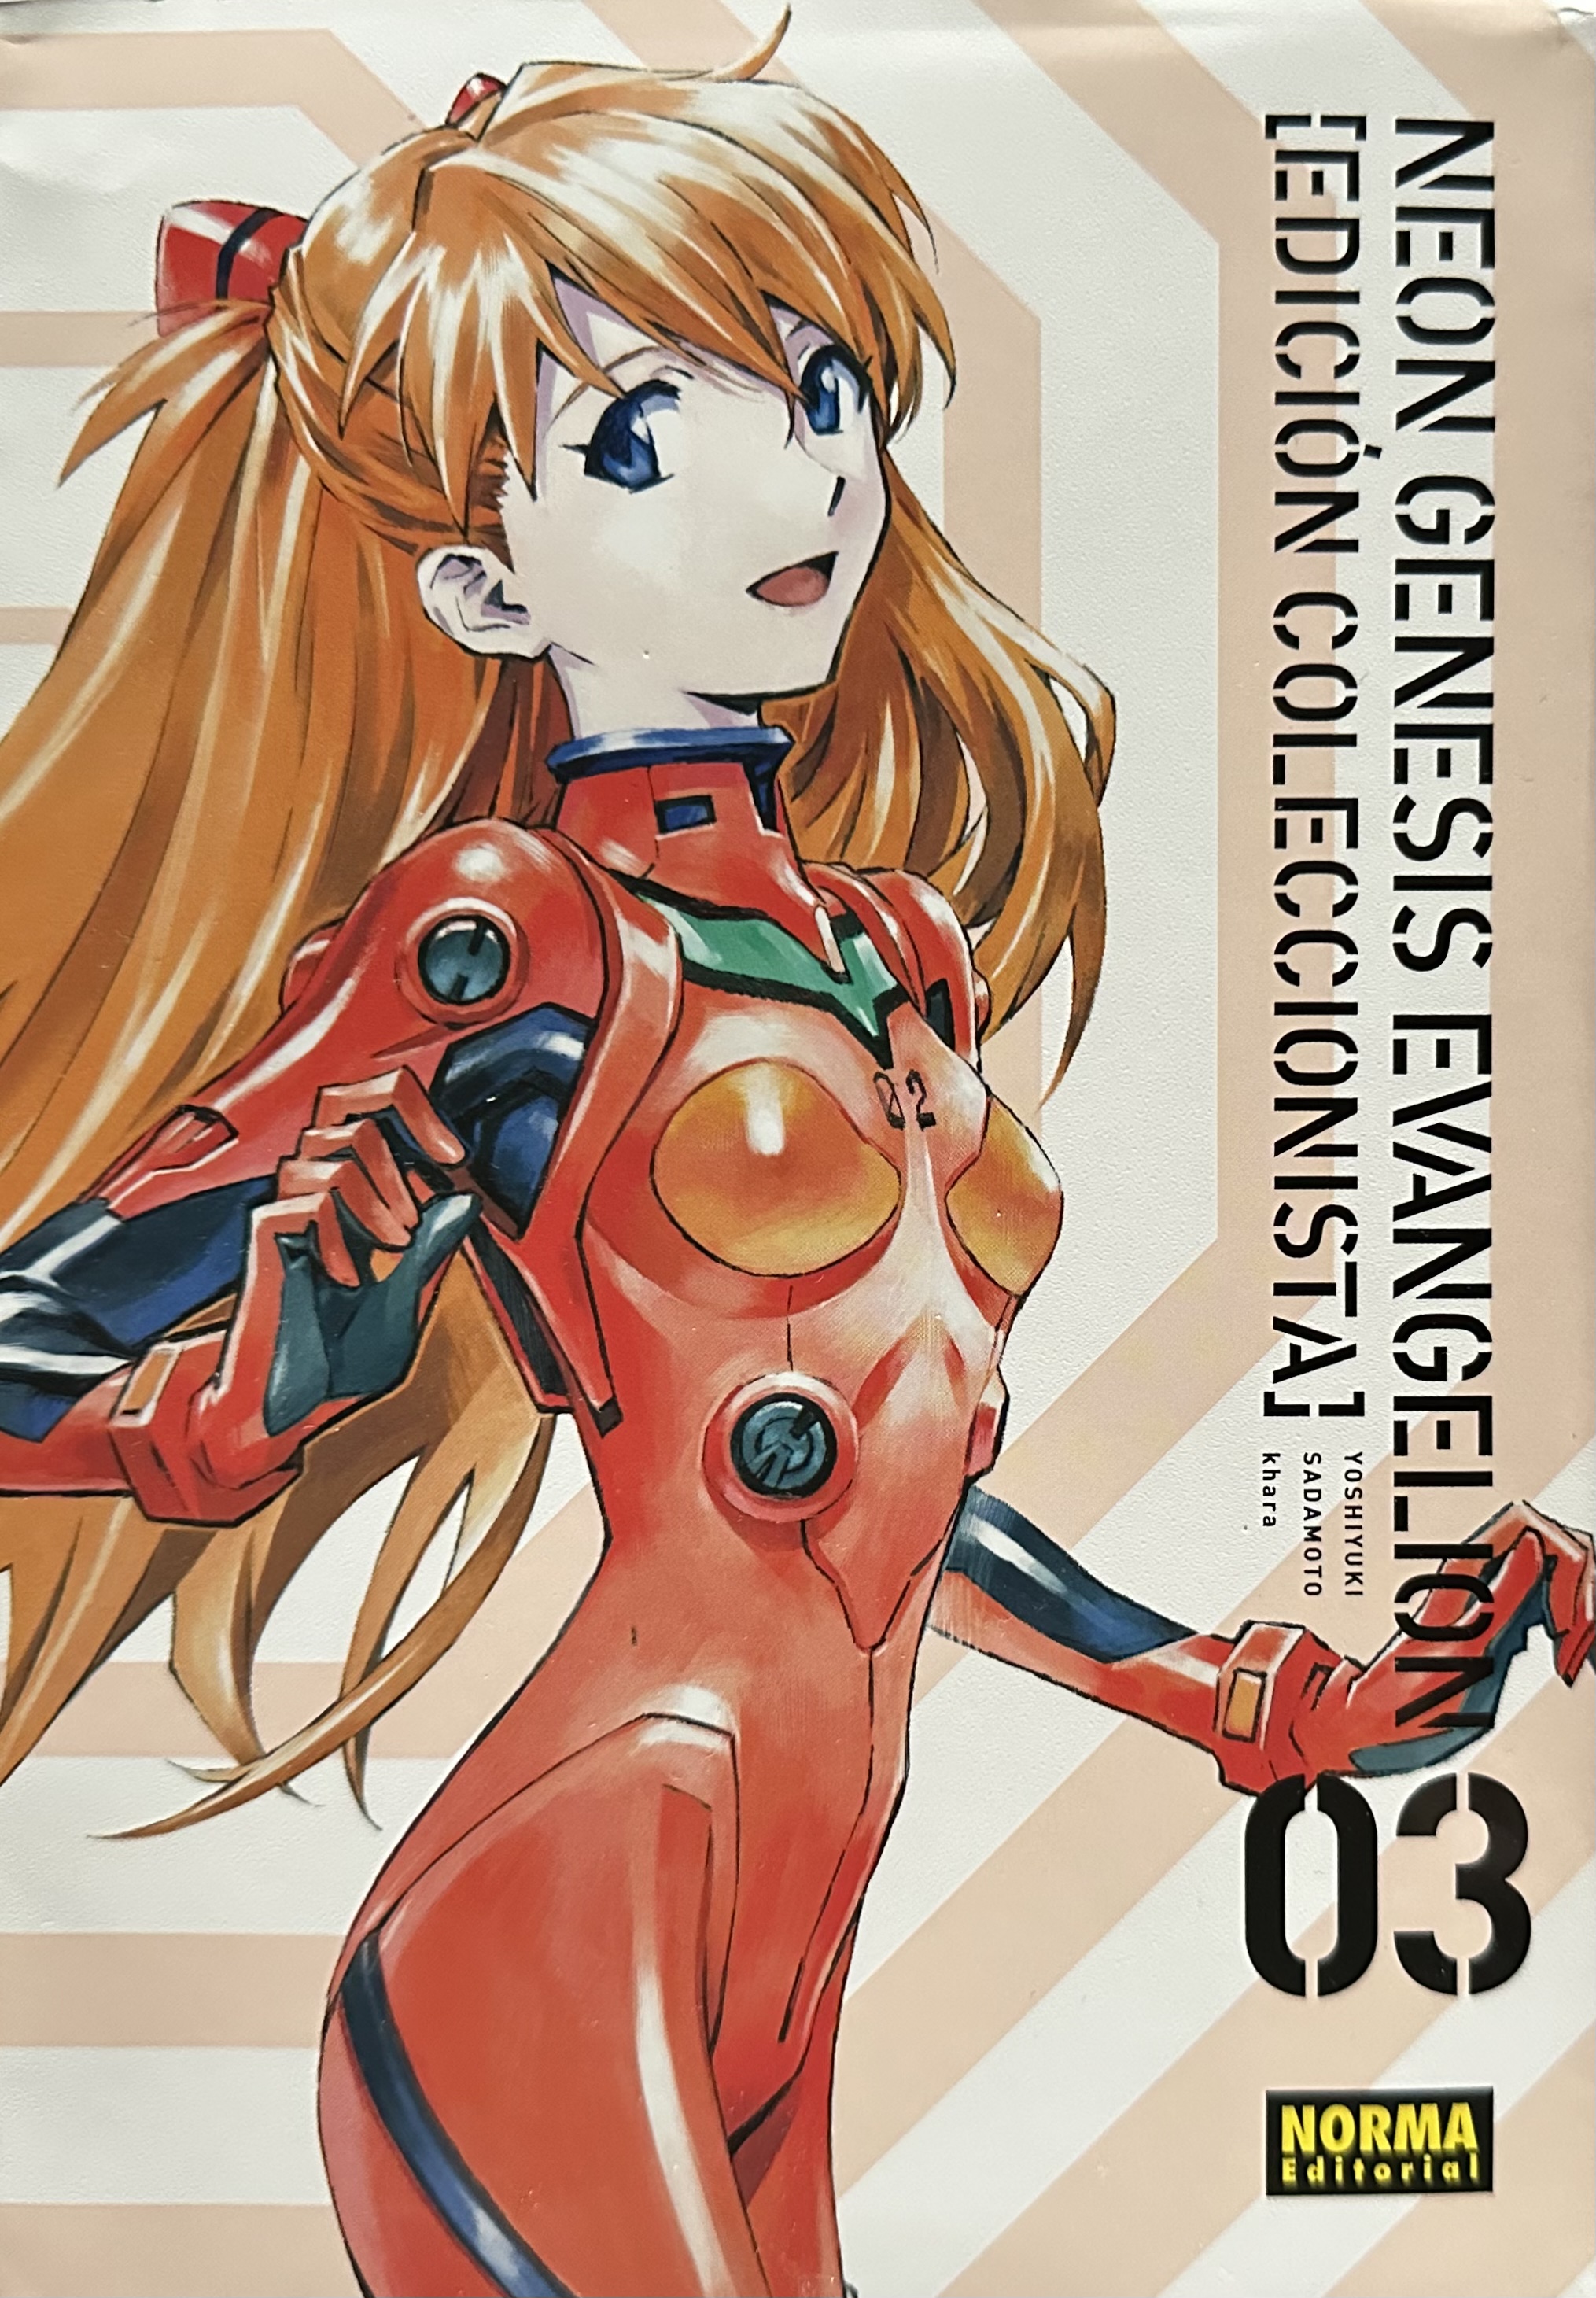 Yoshiyuki Sadamoto: Neon Genesis Evangelion [Edición Coleccionista], 03 (Spanish language, Norma editorial)